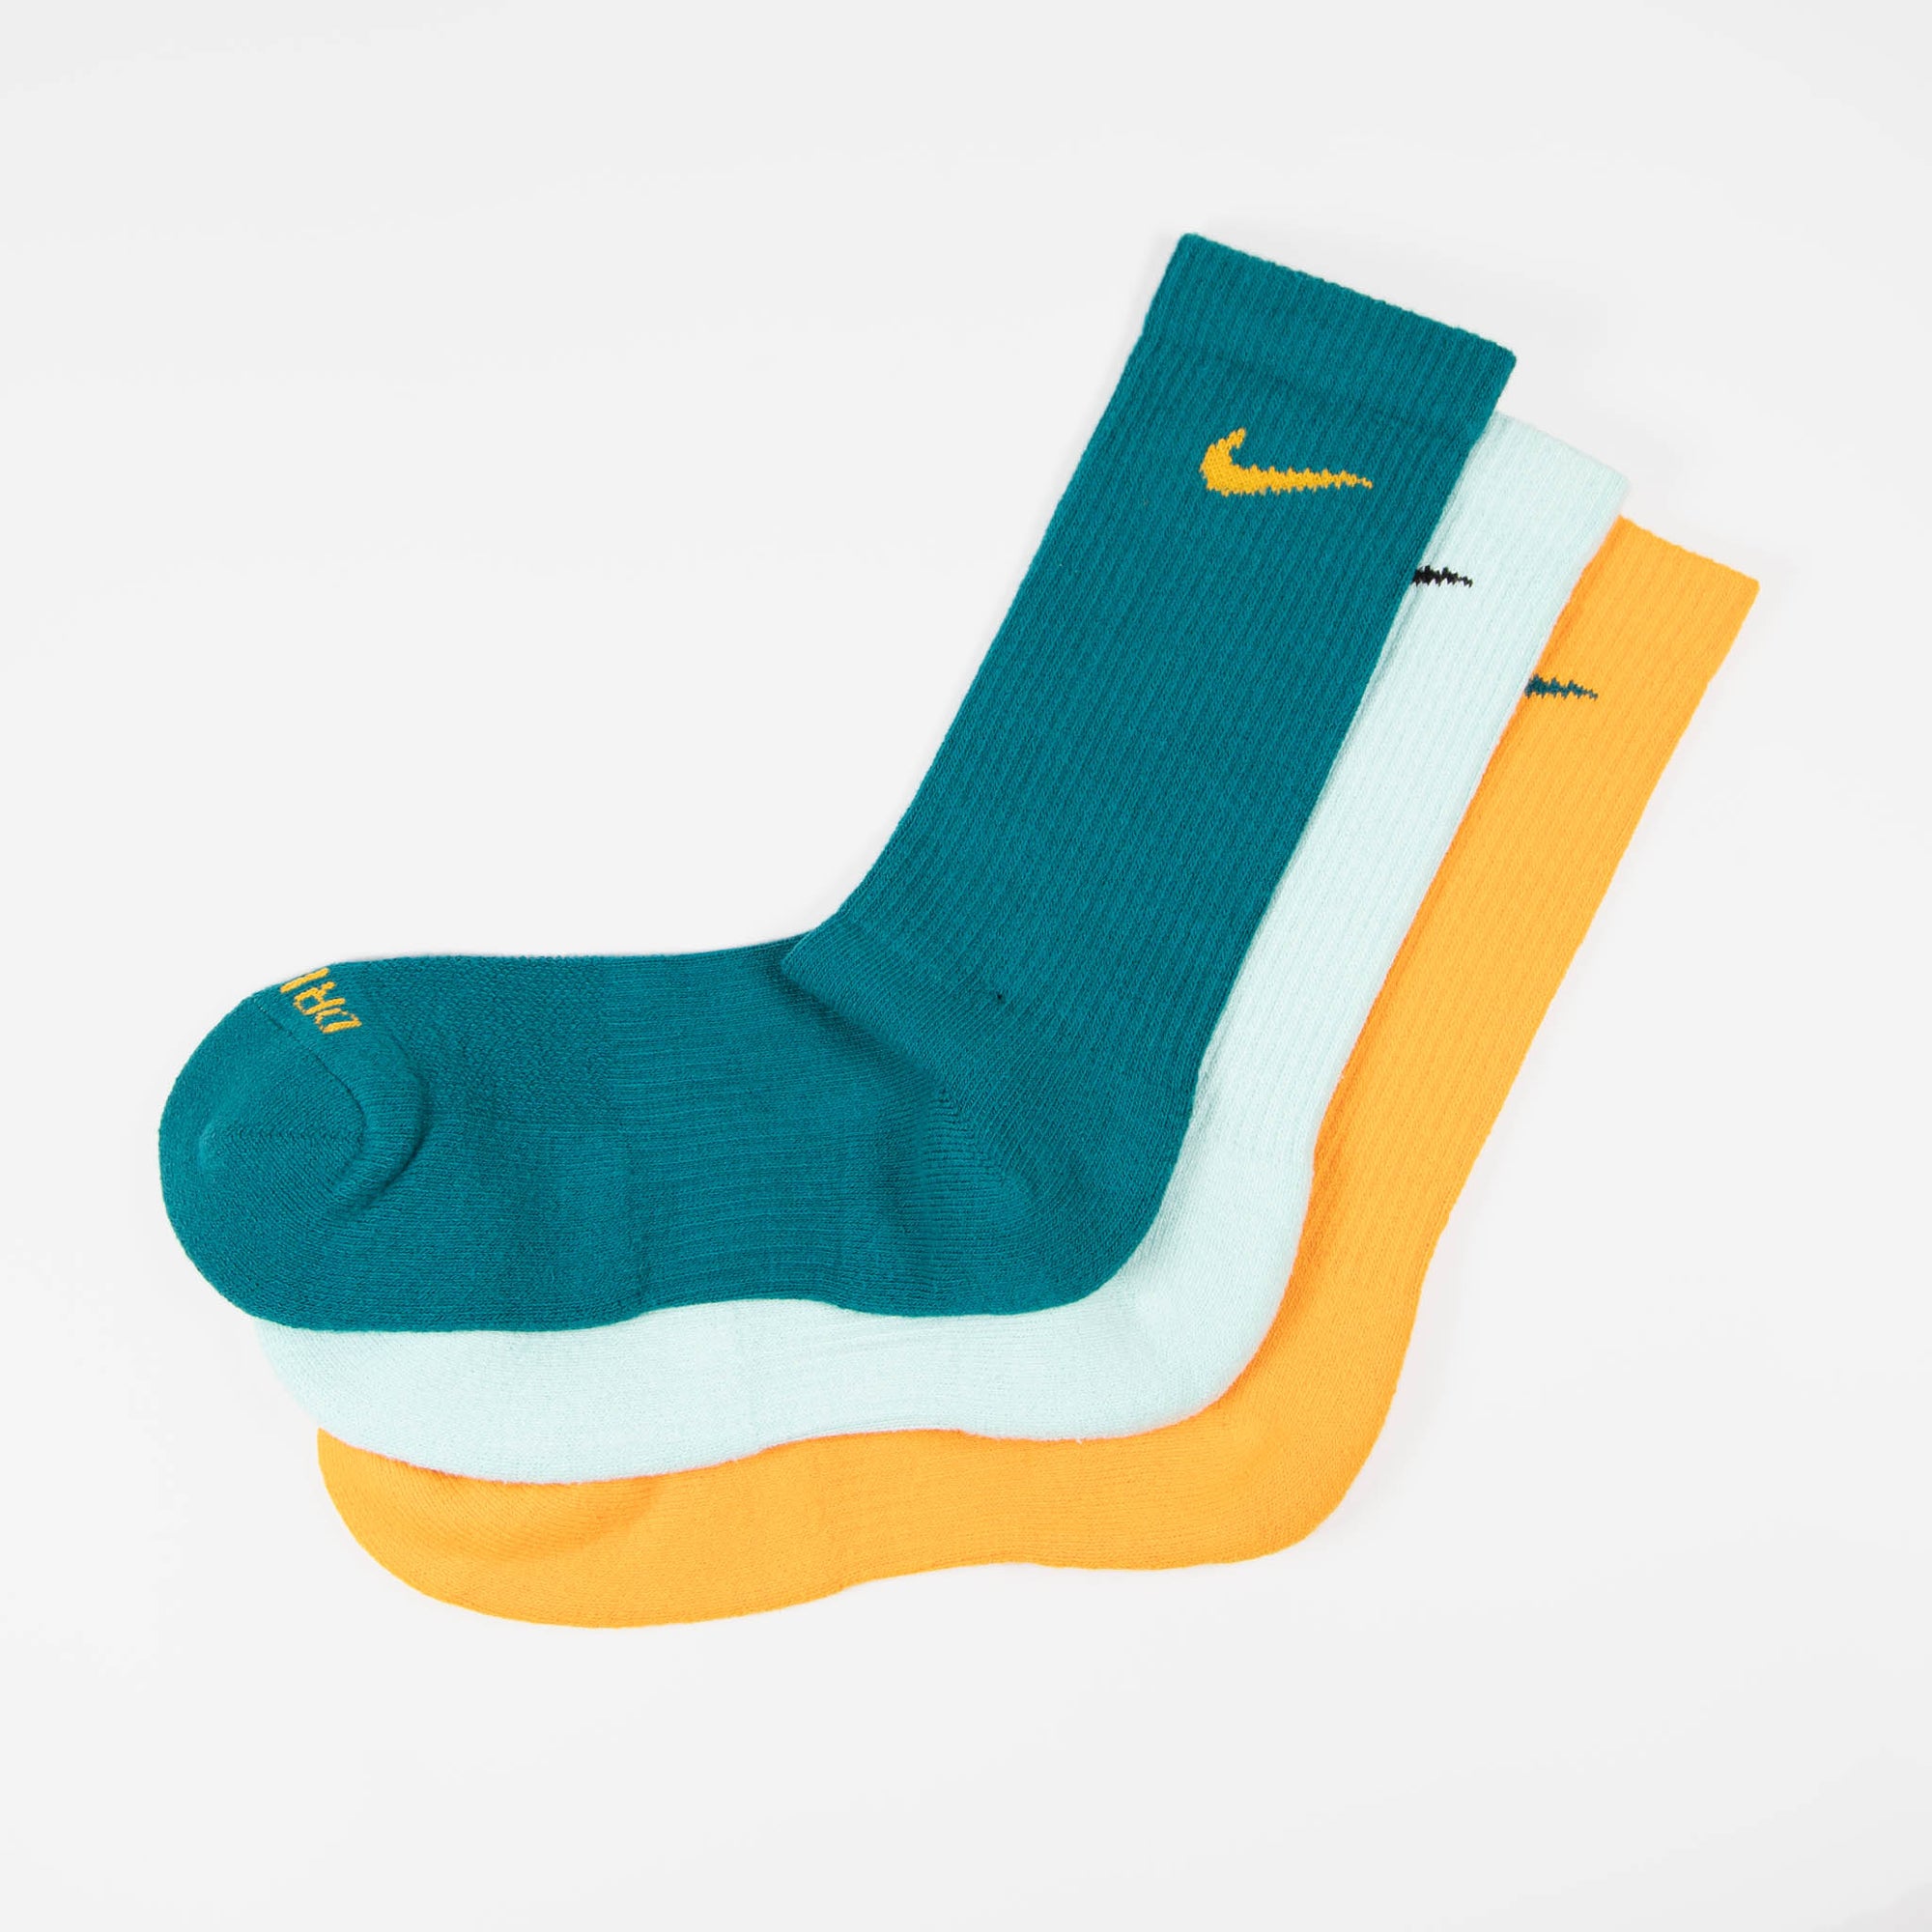 Nike SB - Everyday Plus Cushioned Socks (3 Pack) - Gold / Seafoam / Te –  Welcome Skate Store